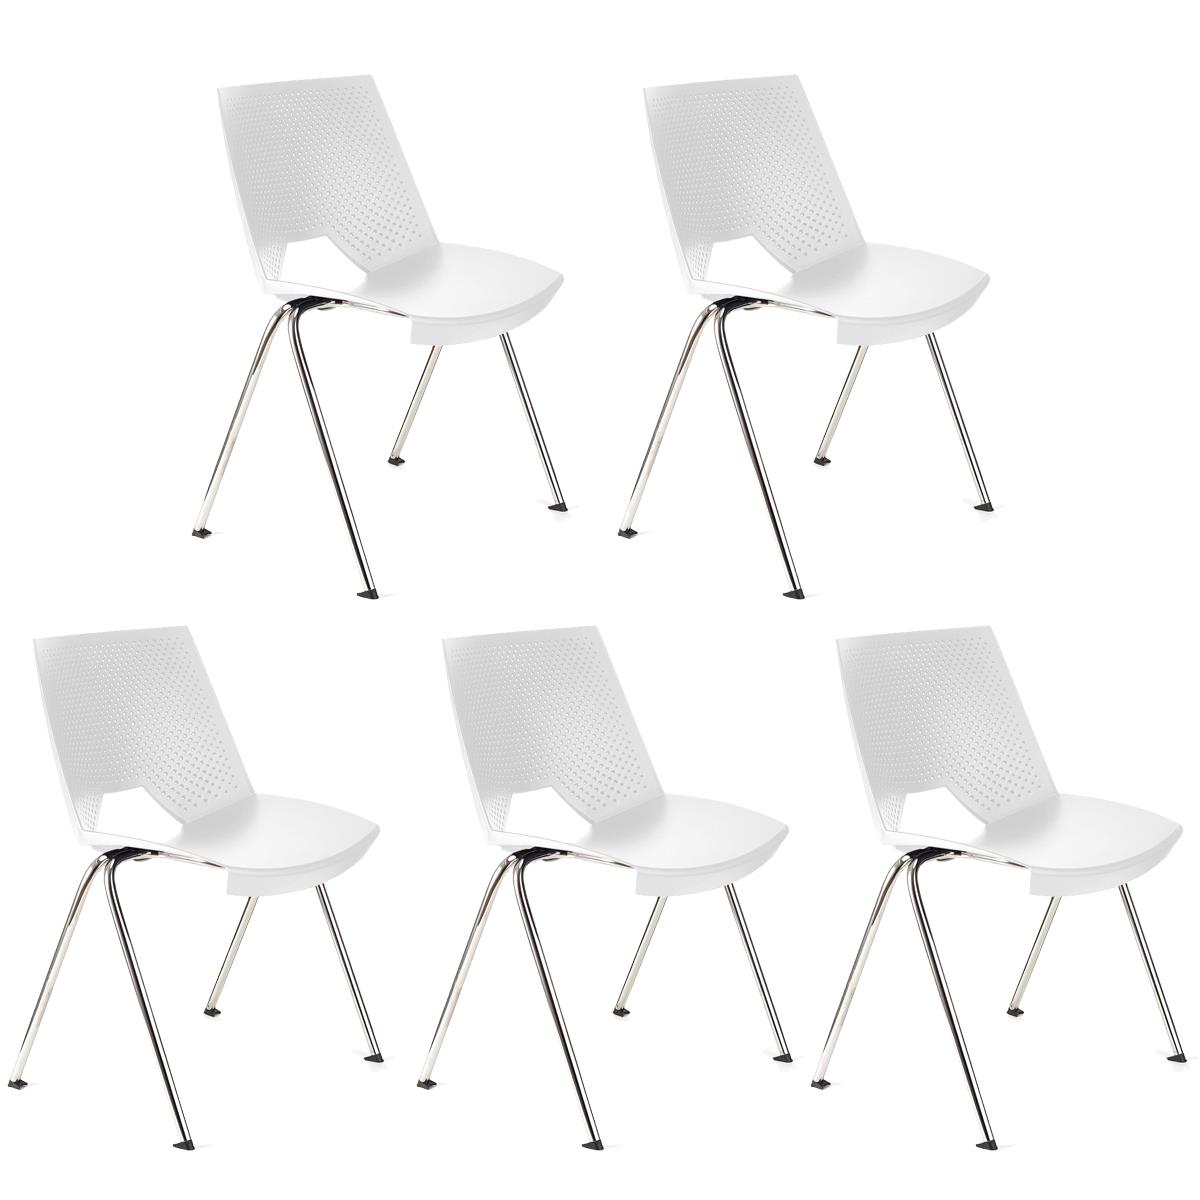 Lote 5 Cadeiras de Visita ENZO, Confortável e Prática, Empilhável, Cor Branco